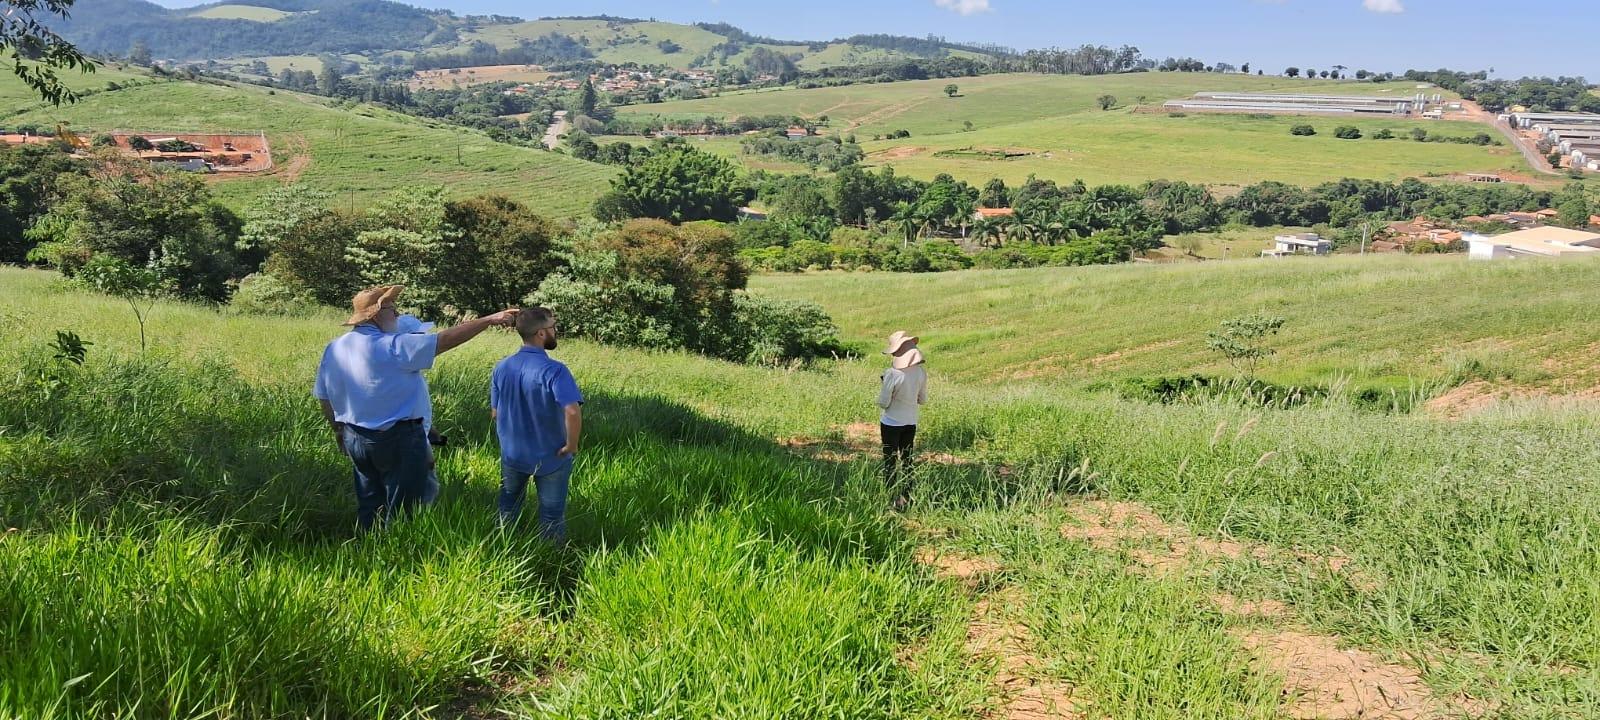 Equipe do De Olho nos Rios faz visita técnica em propriedade rural de Tuiuti para planejar a instalação de bacias de captação